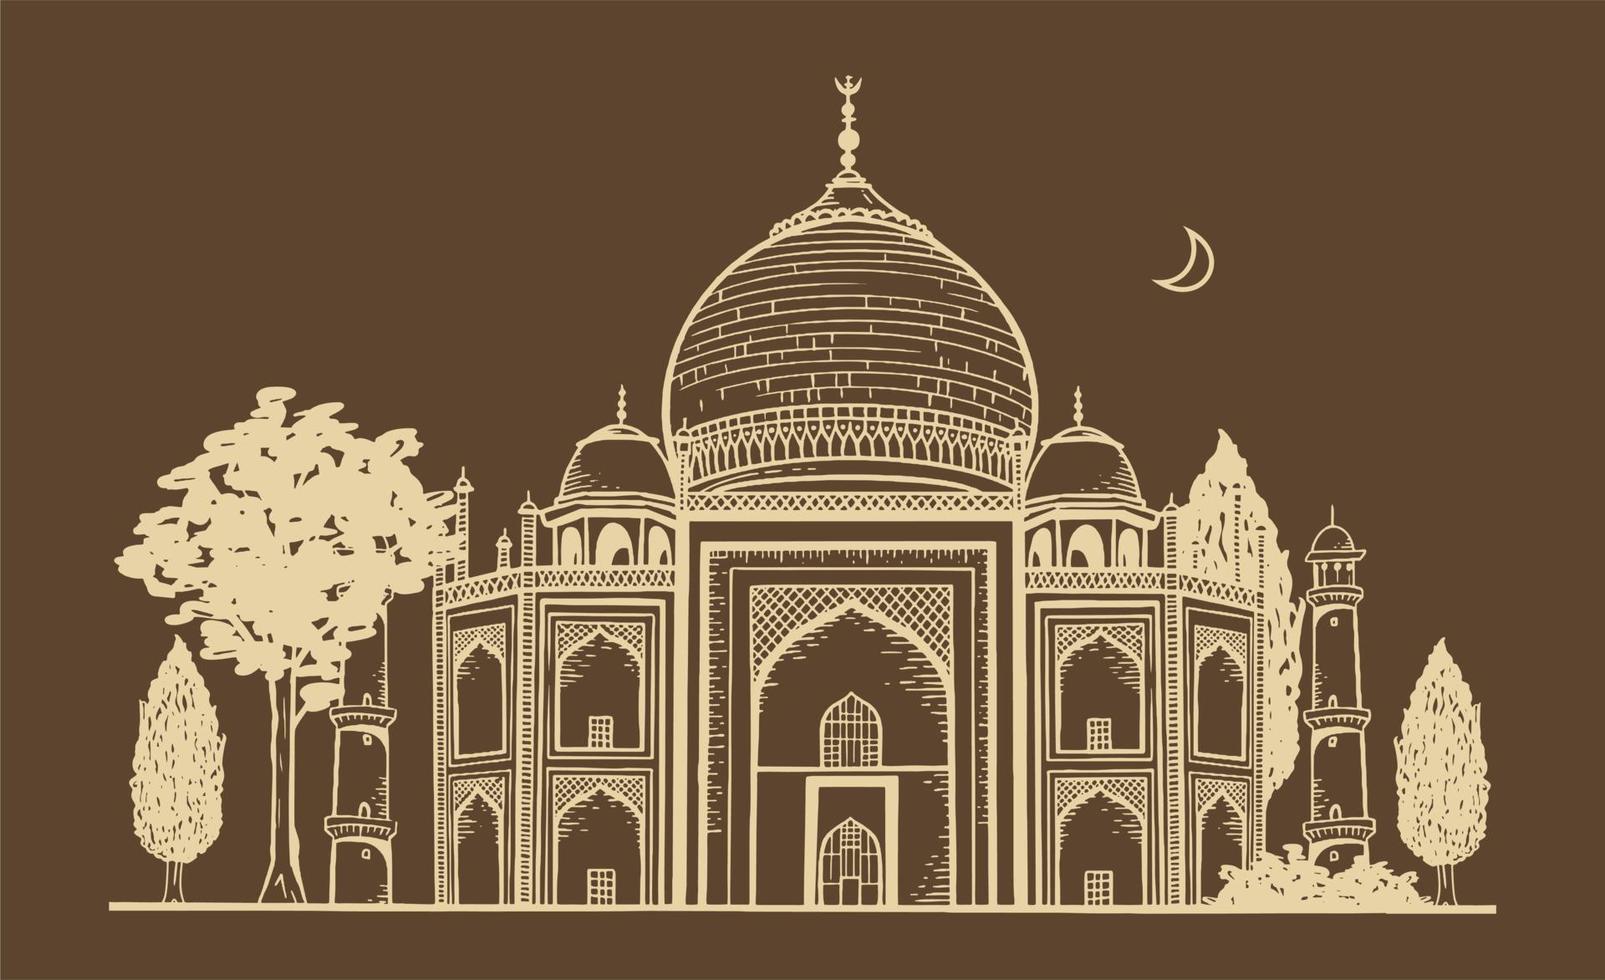 dessin à la main de la mosquée musulmane ramadan kareem illustration vectorielle de vacances islamiques traditionnelles vecteur